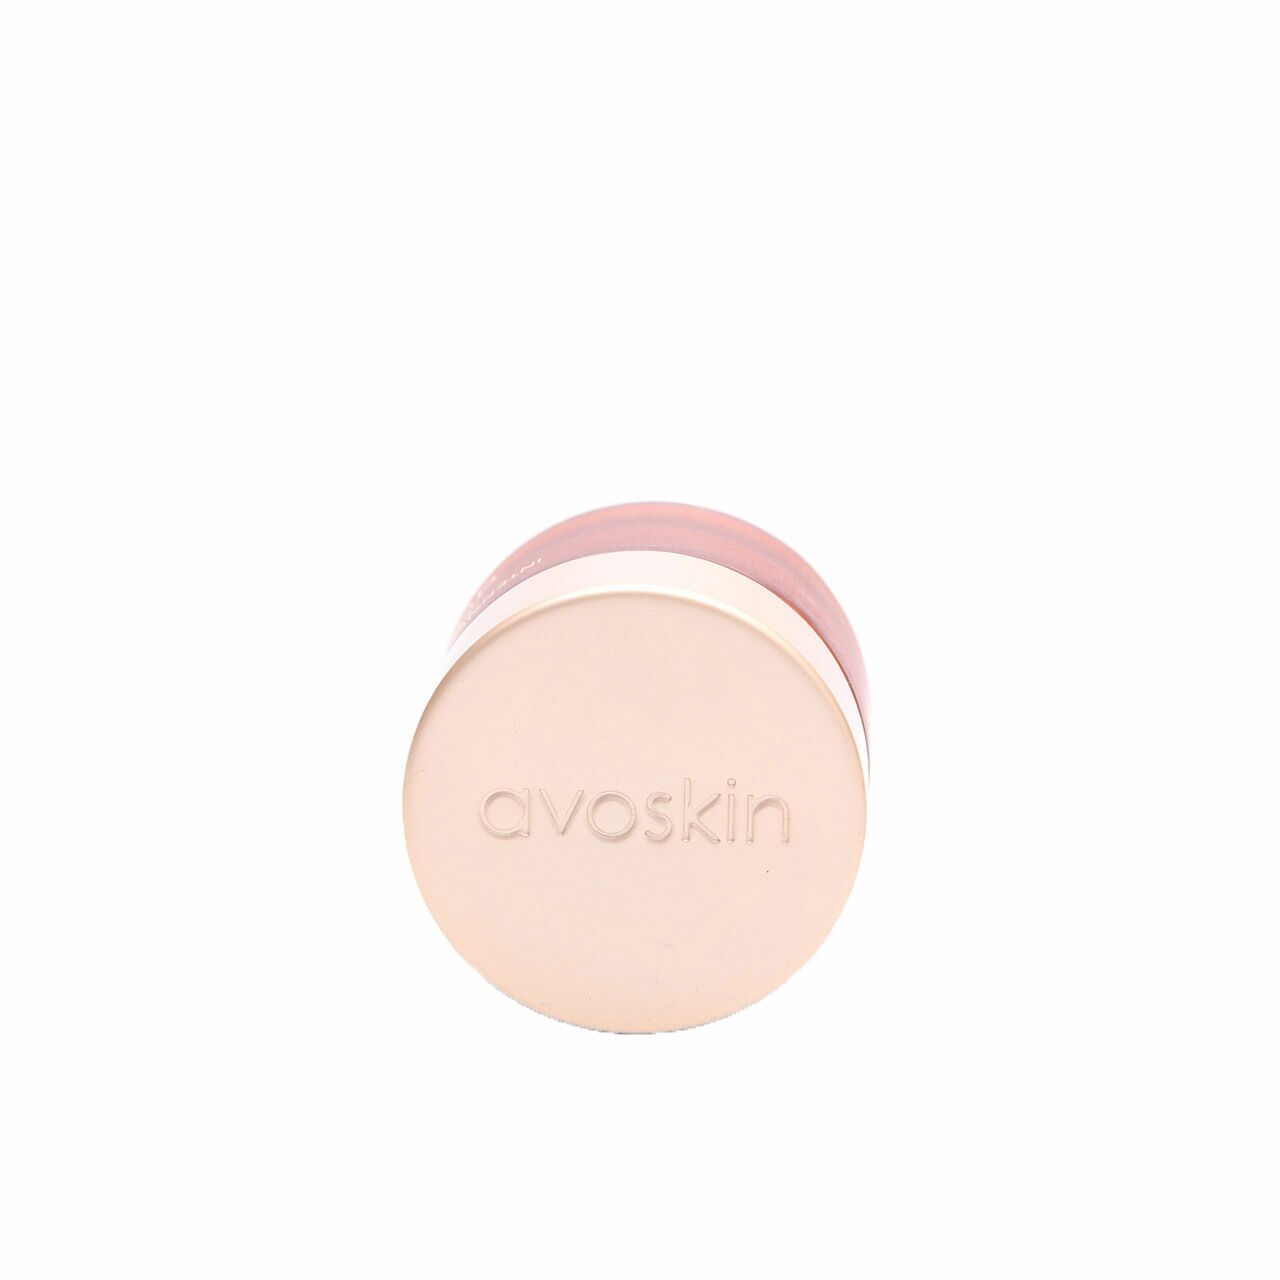 Avoskin Intensive Nourshing Eye Cream